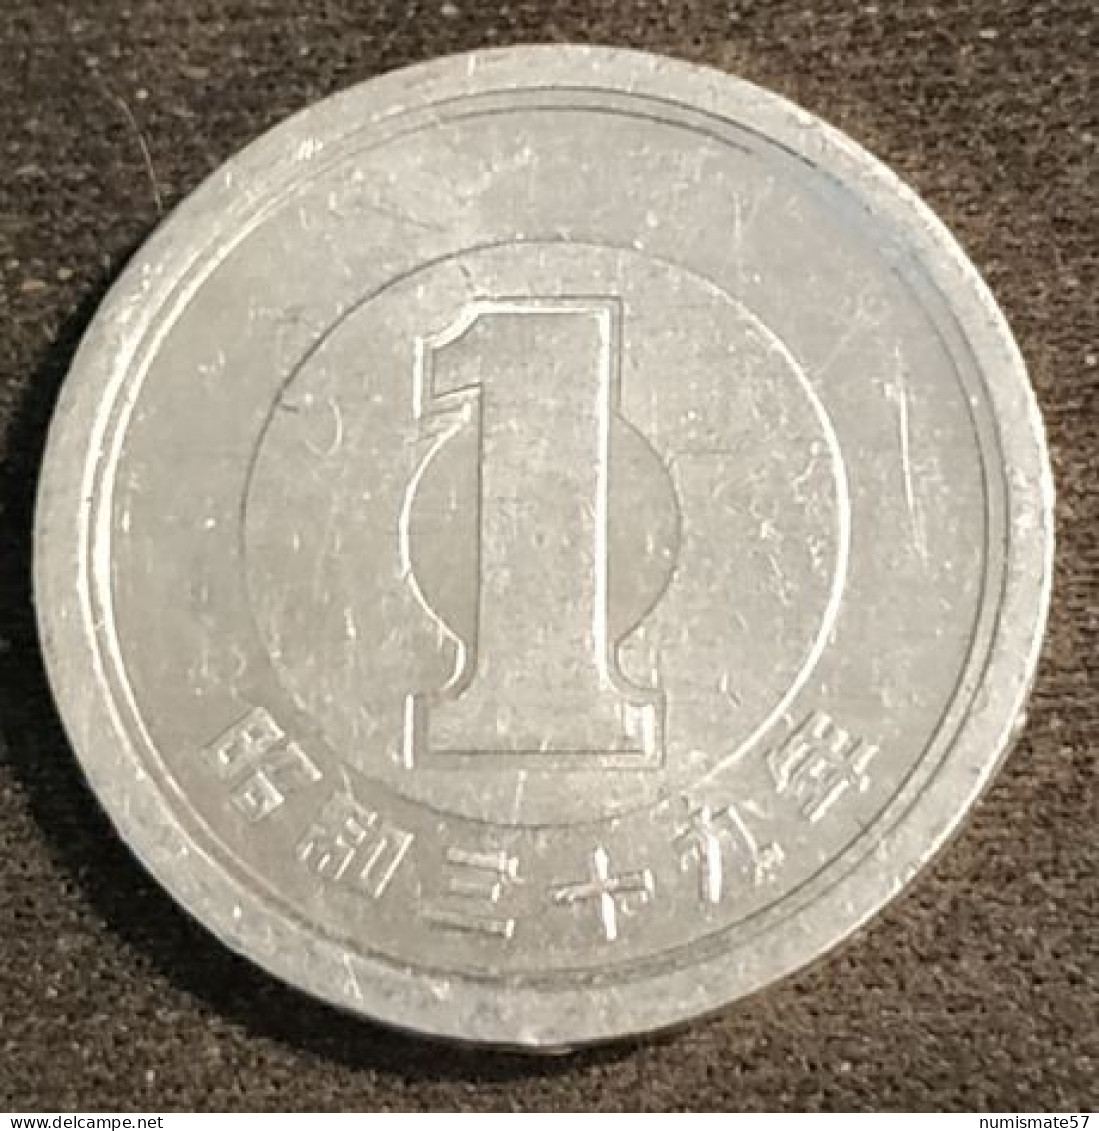 JAPON - JAPAN - 1 YEN 1964 - Shōwa - Year 39 - KM 74 - Japan